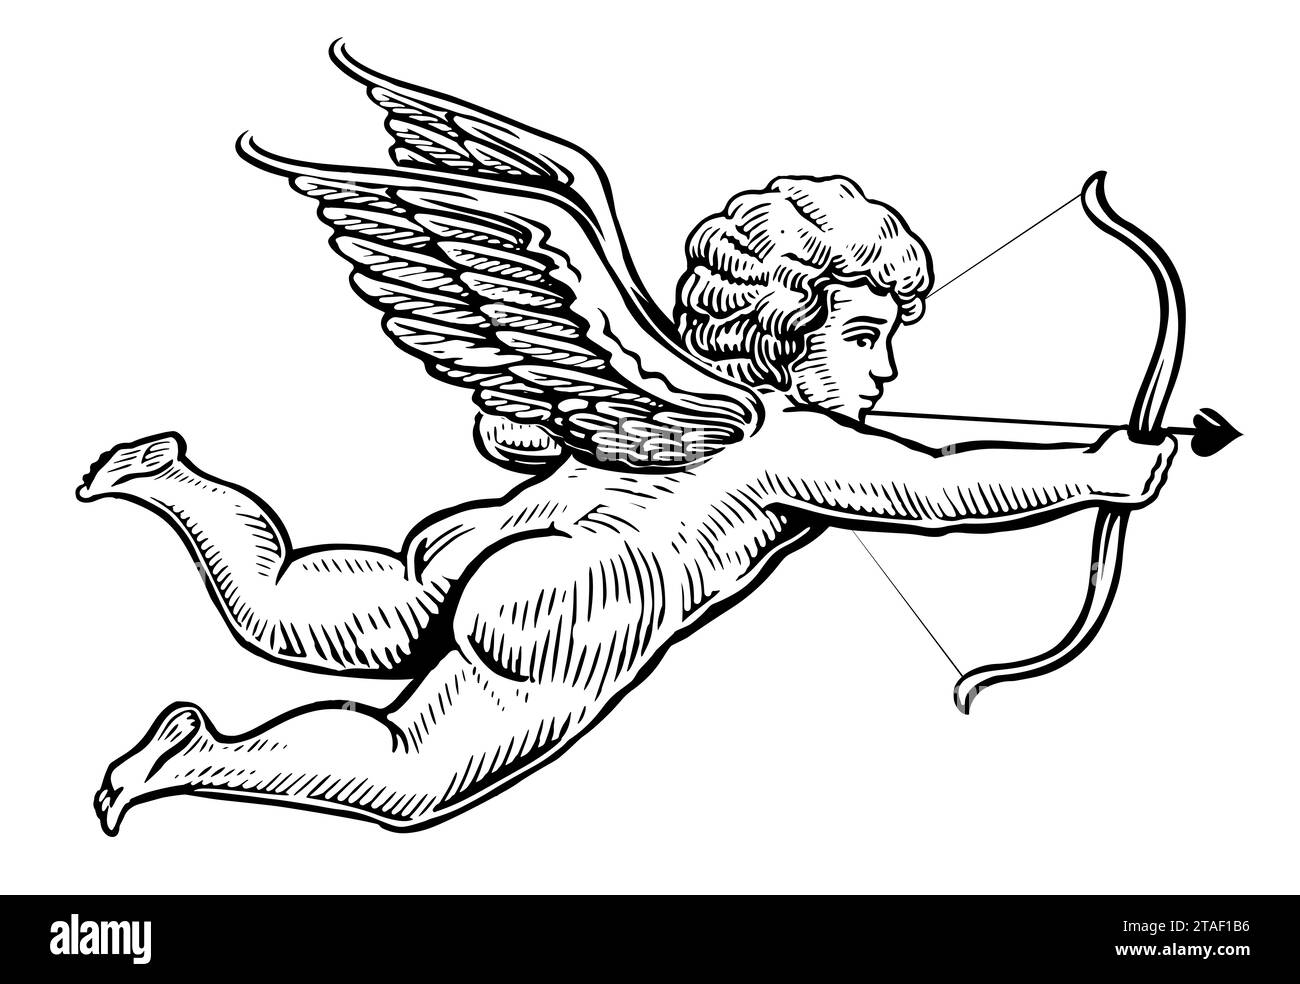 Ange volant dessiné à la main avec arc et flèche isolé sur fond blanc. Esquissez une illustration vintage Banque D'Images